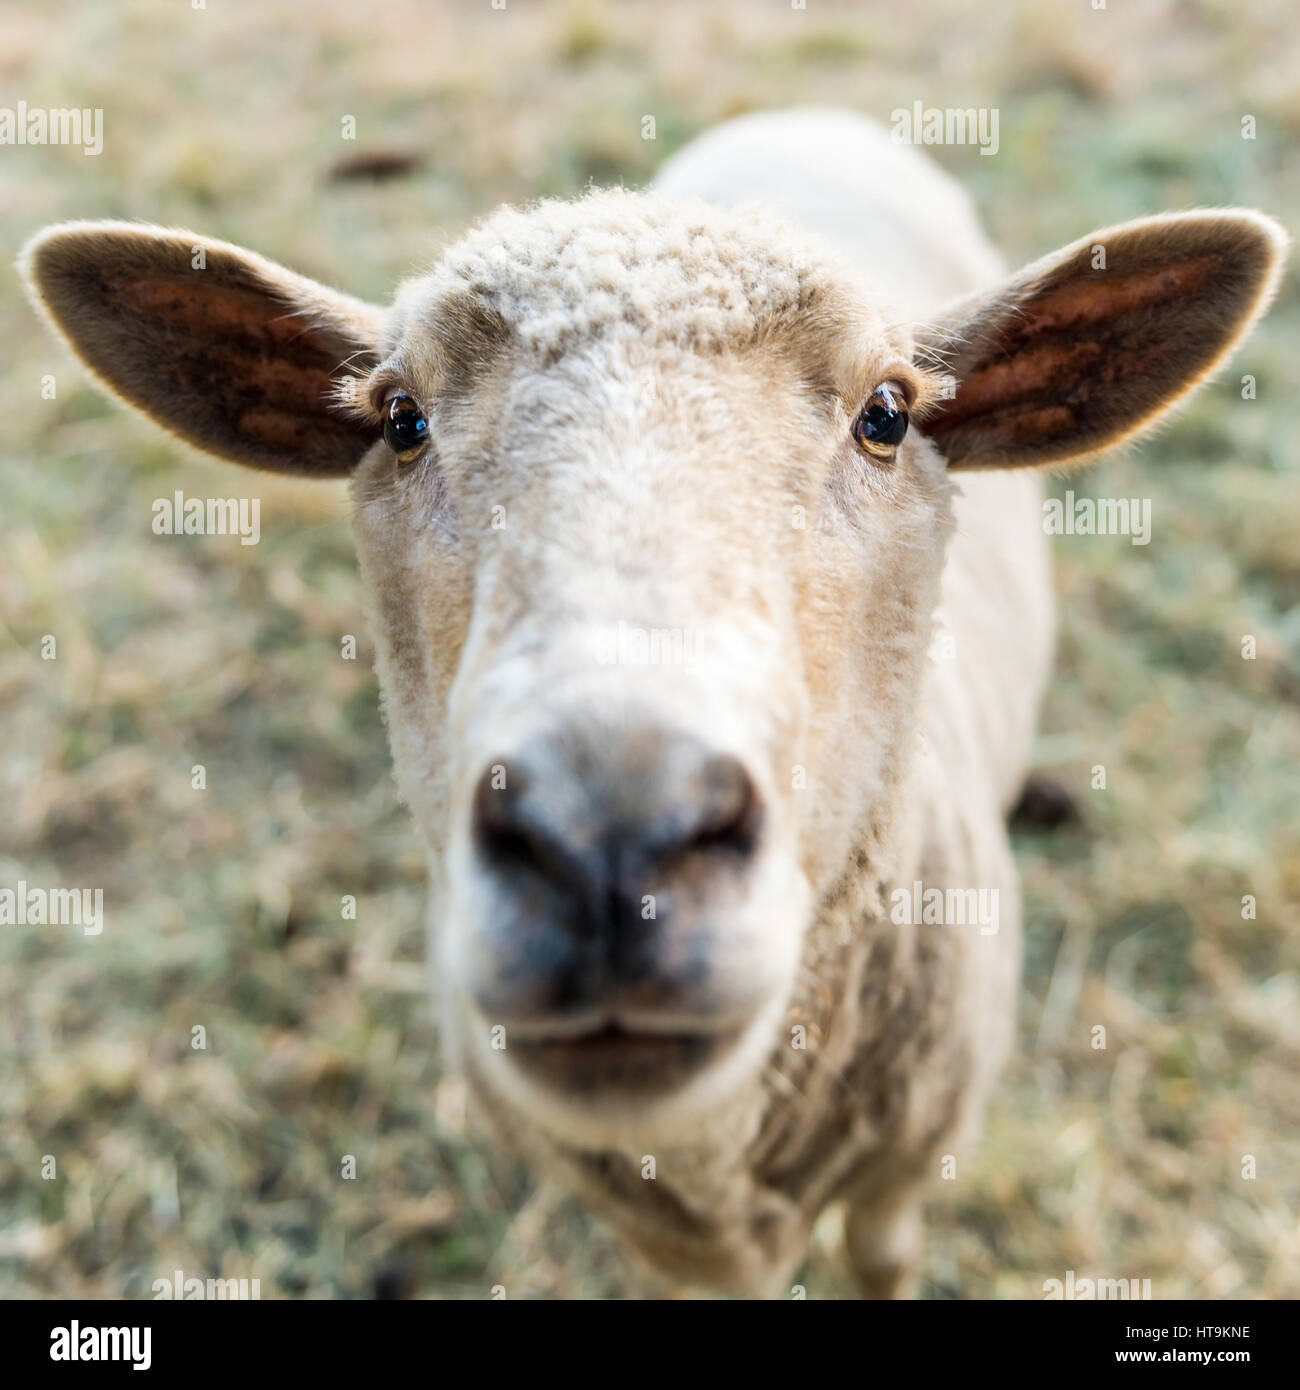 Curioso ovejas, funny animal doméstico Foto de stock